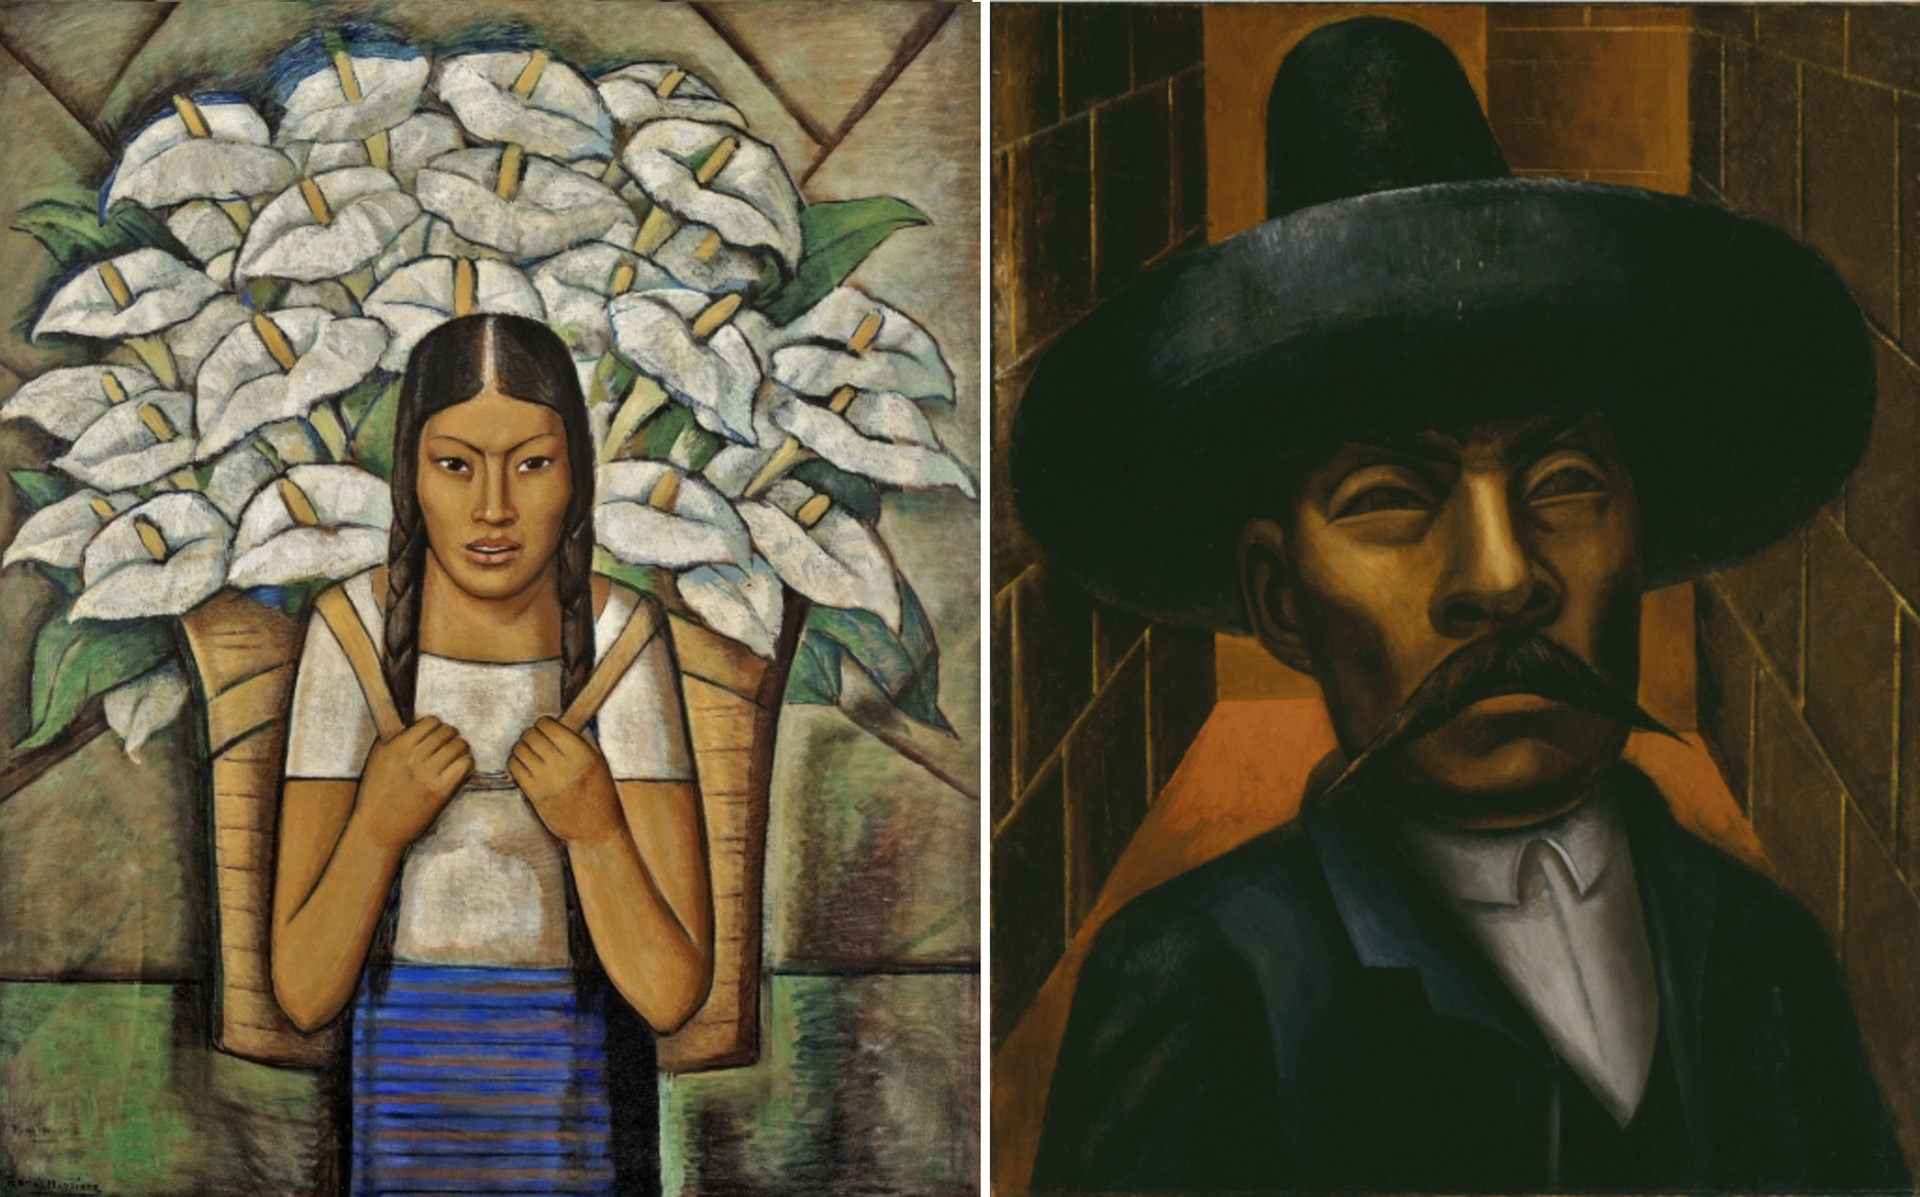 la influencia de los artistas mexicanos a los norteamericanos